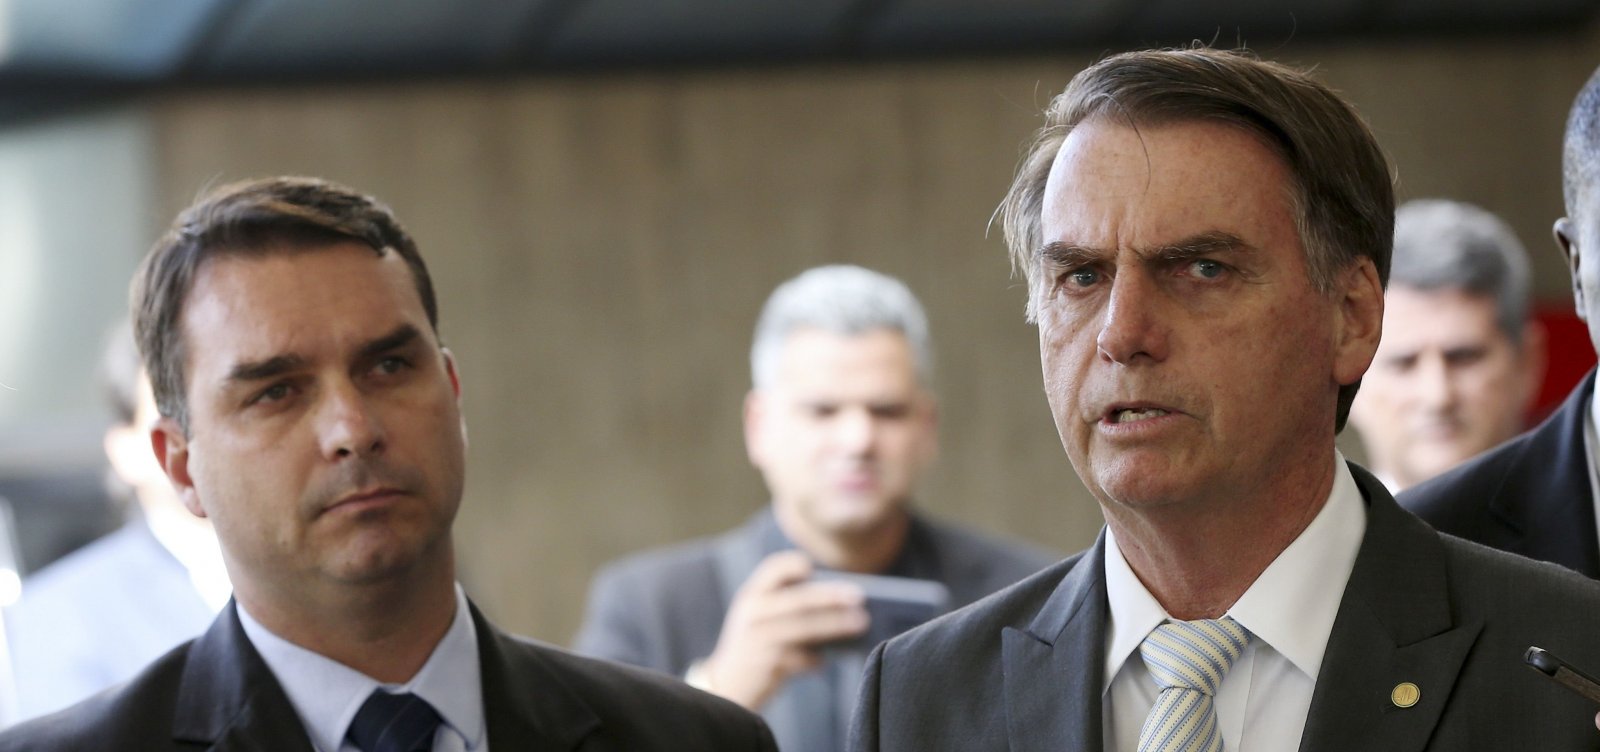 Congresso pressiona Bolsonaro a esclarecer repasses irregulares